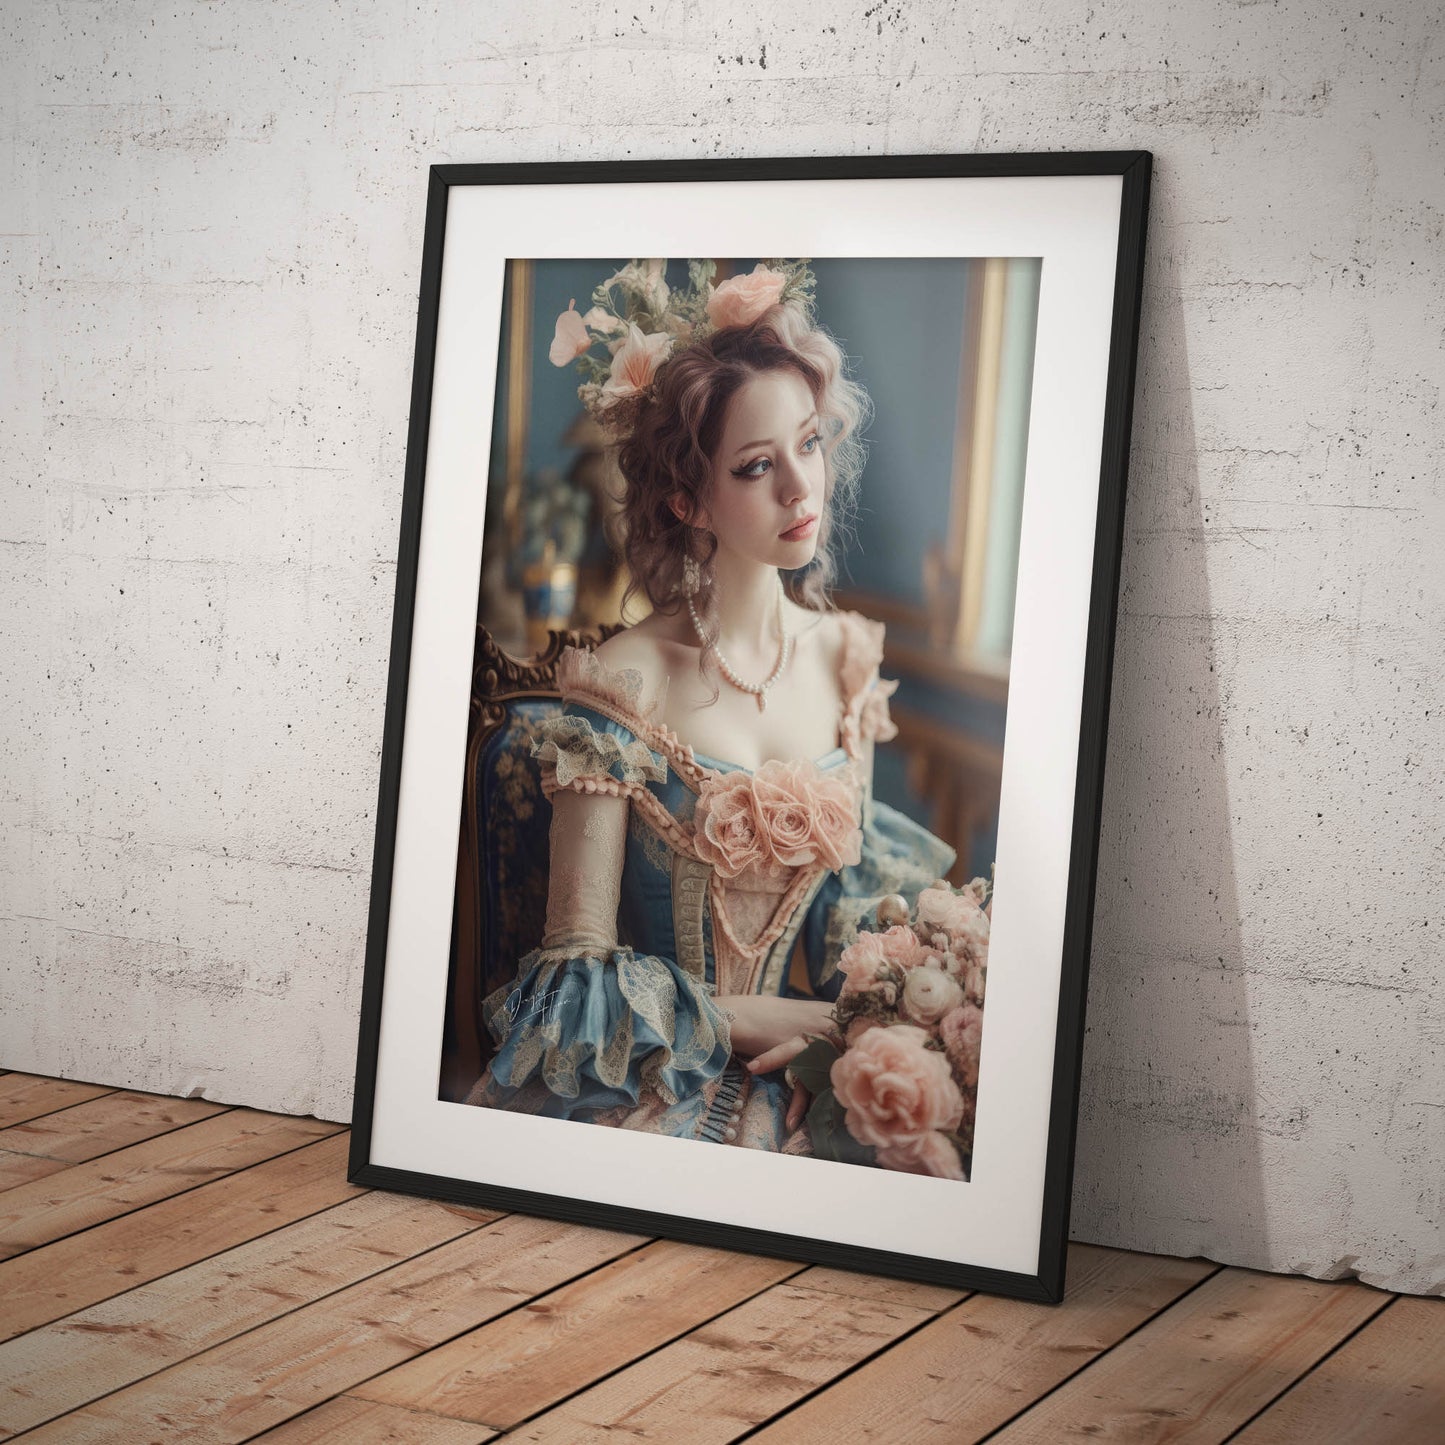 »Delightful Rococo Reveries« poster